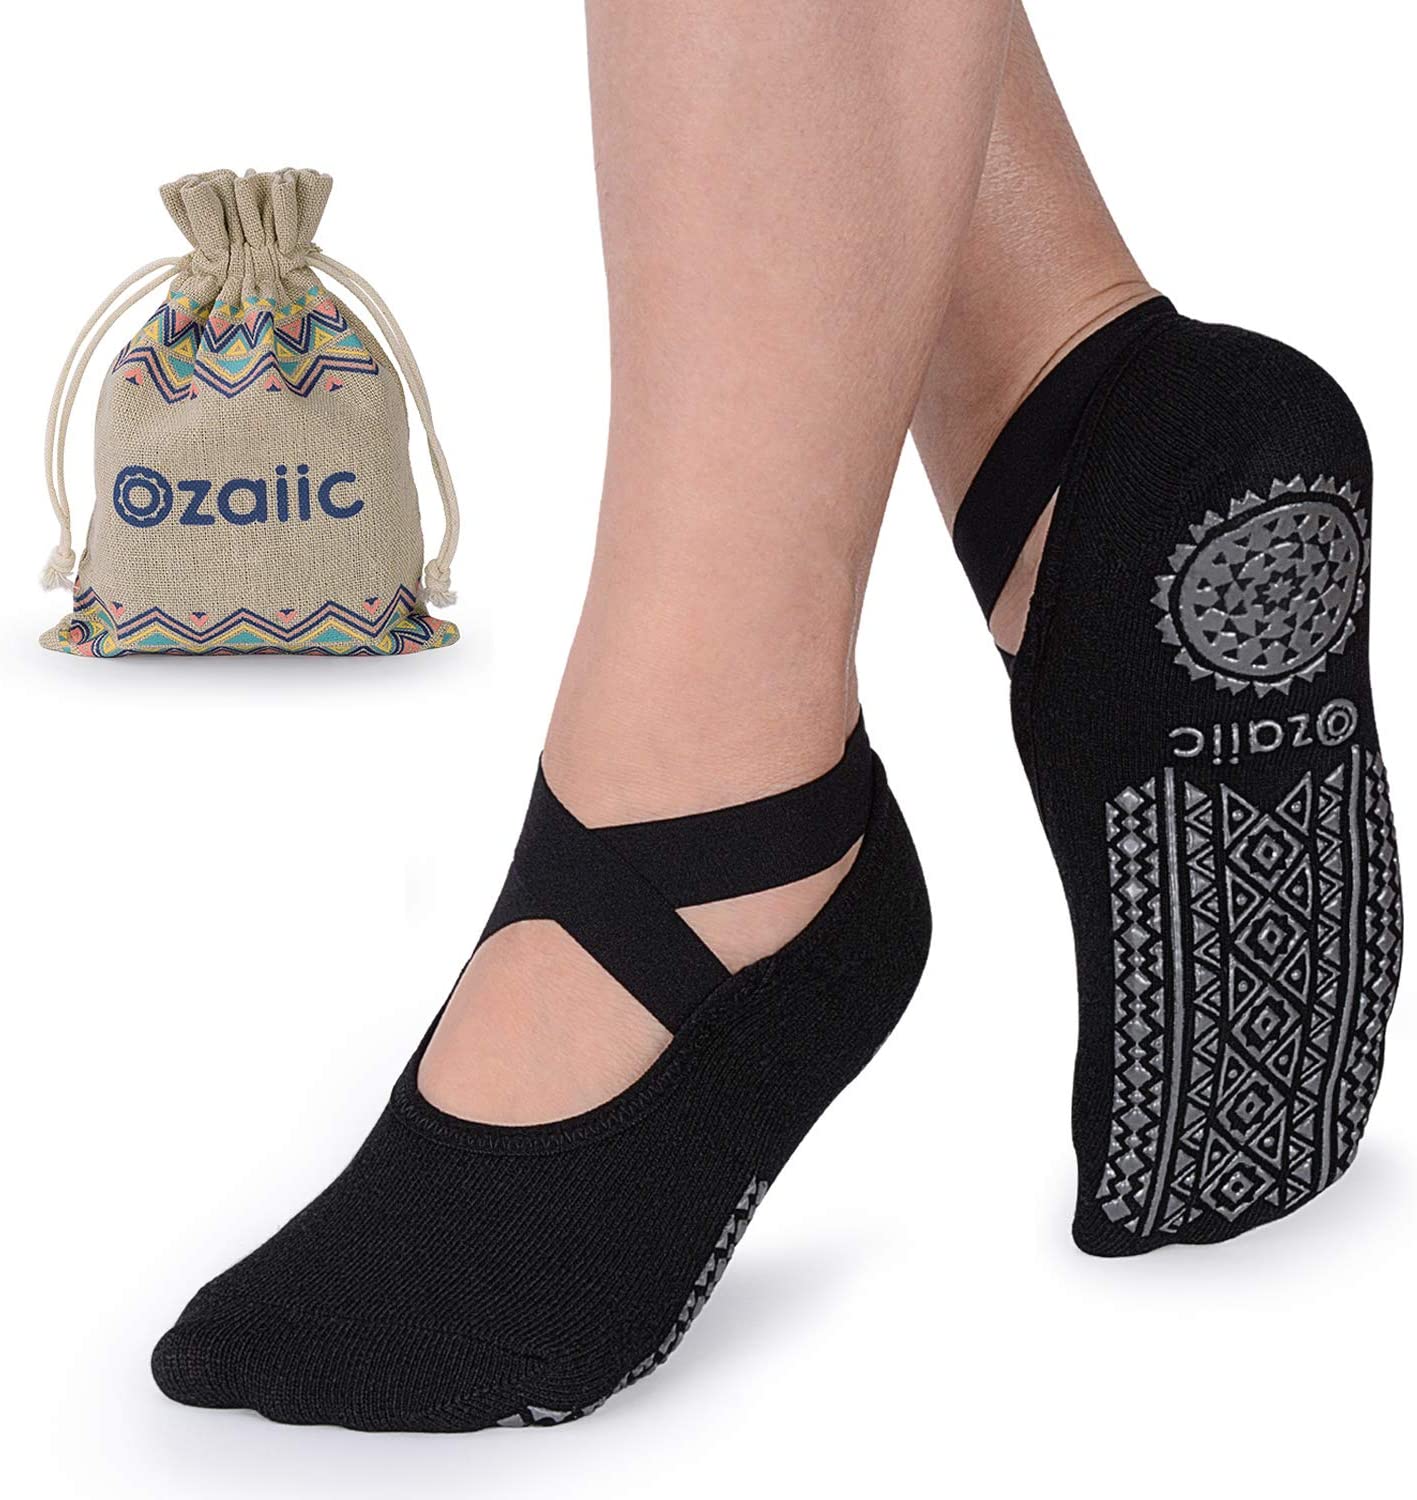 Buy Wholesale China Yoga Socks For Women Non-slip Grips & Straps